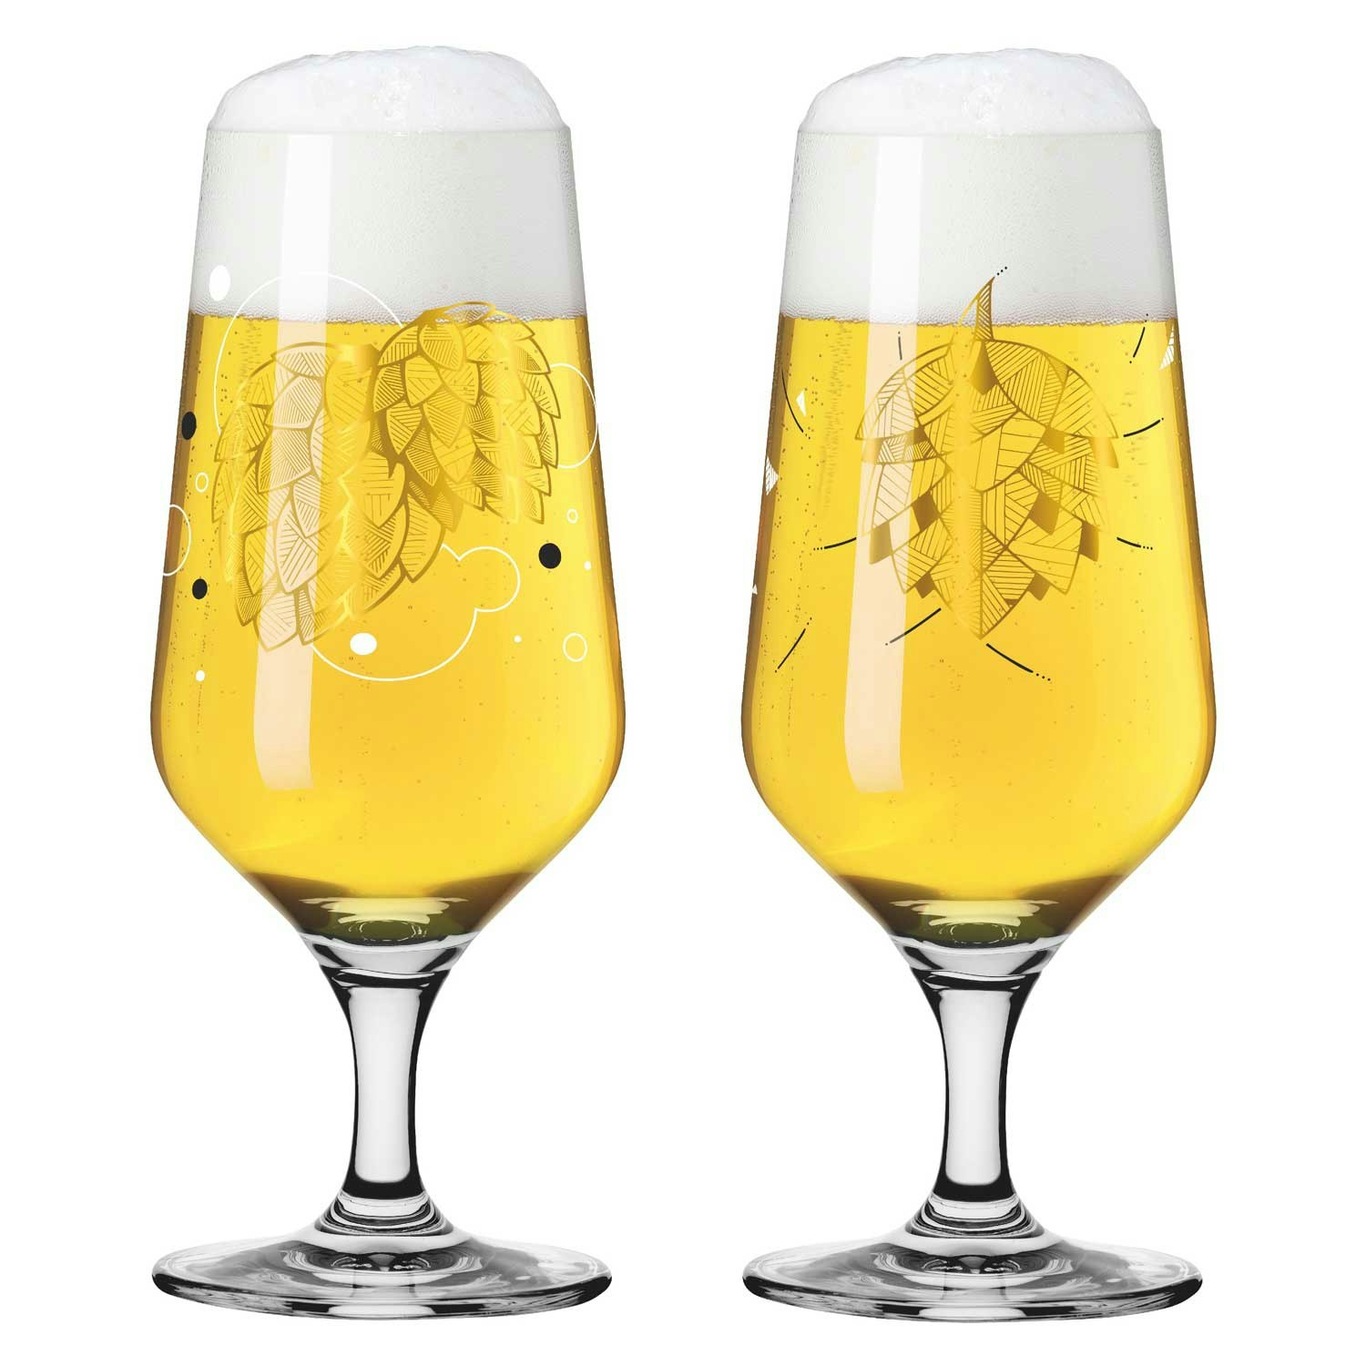 Brauchzeit Beer Glass 37 cl 2-pack, #1 & 2